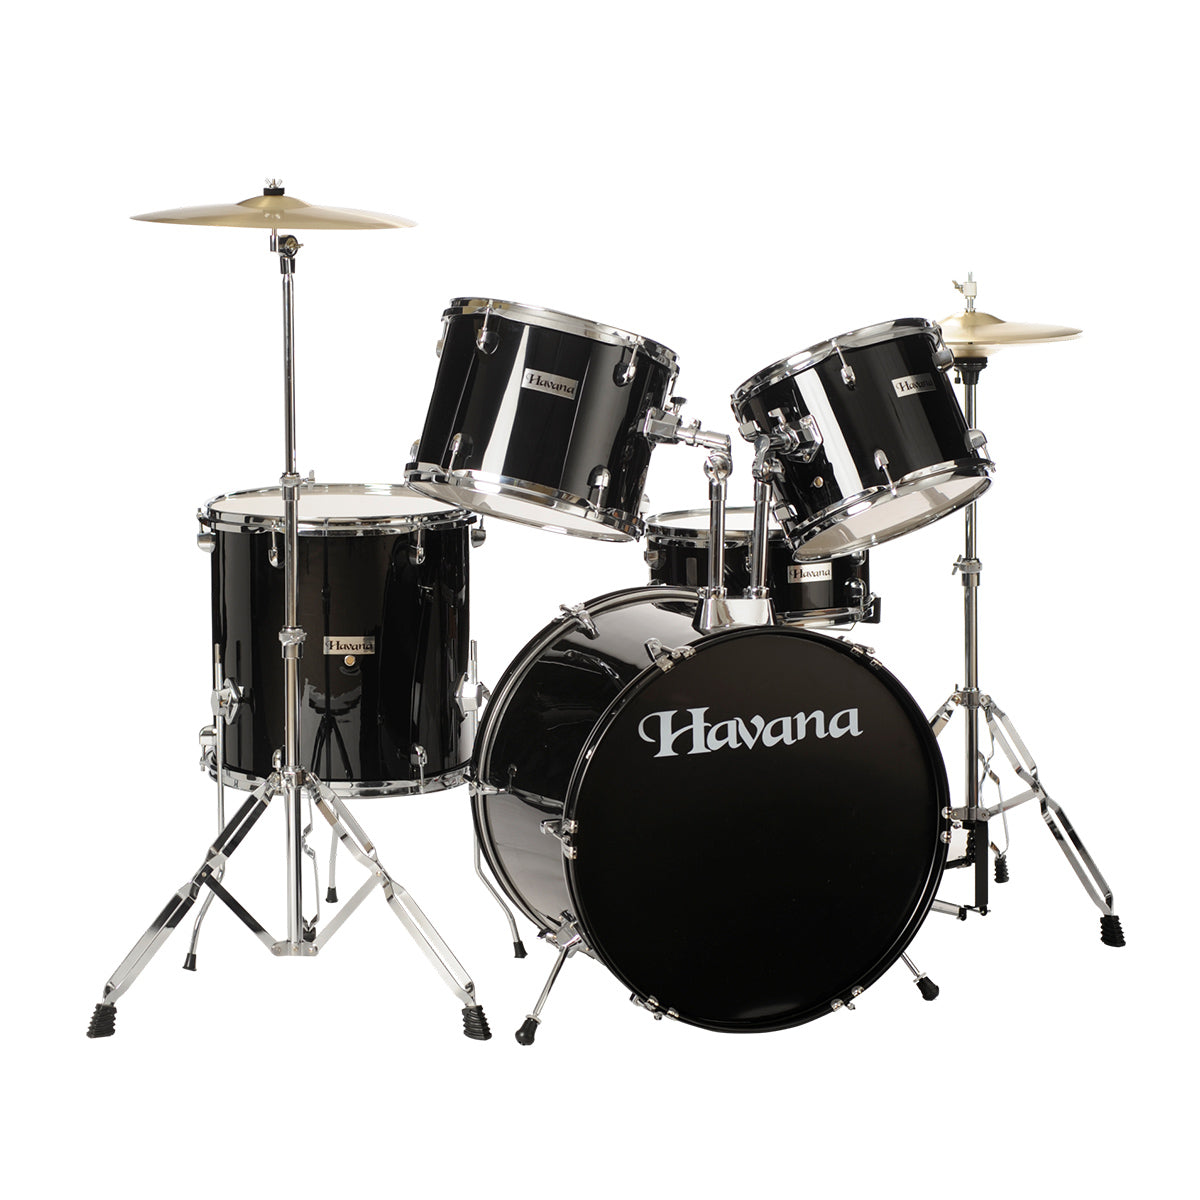 Havana HV 522 BK Acoustic Drum (full kit) 5PCs set including Hardware